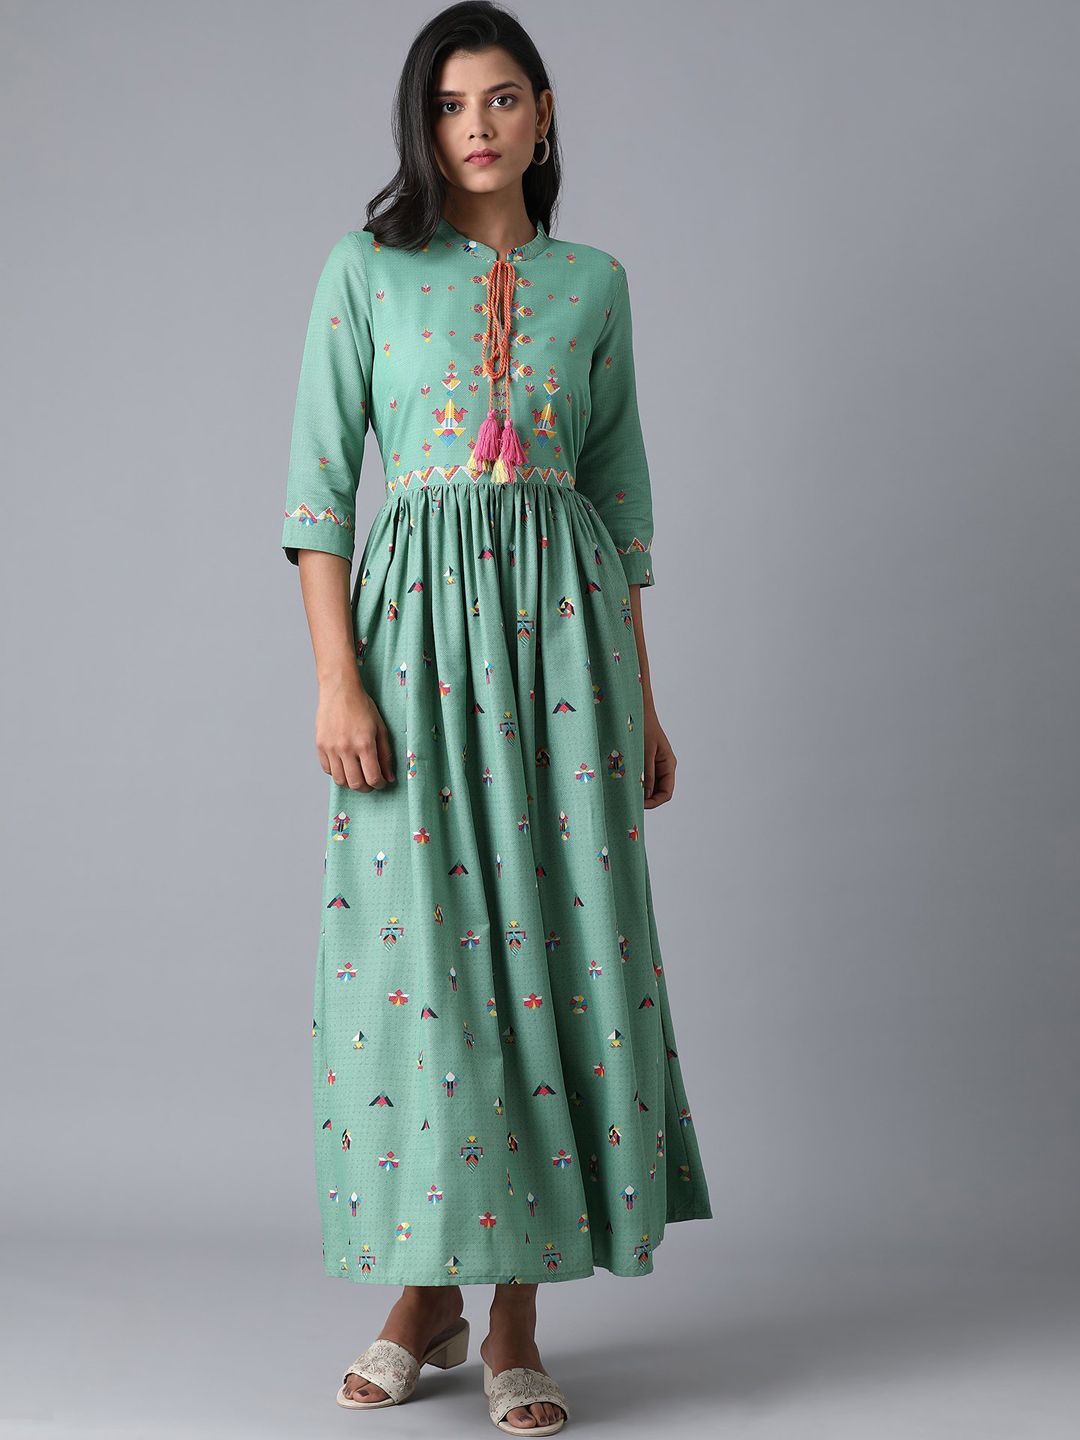 W Women Sea Green Printed Viscose Rayon Maxi Dress Price in India